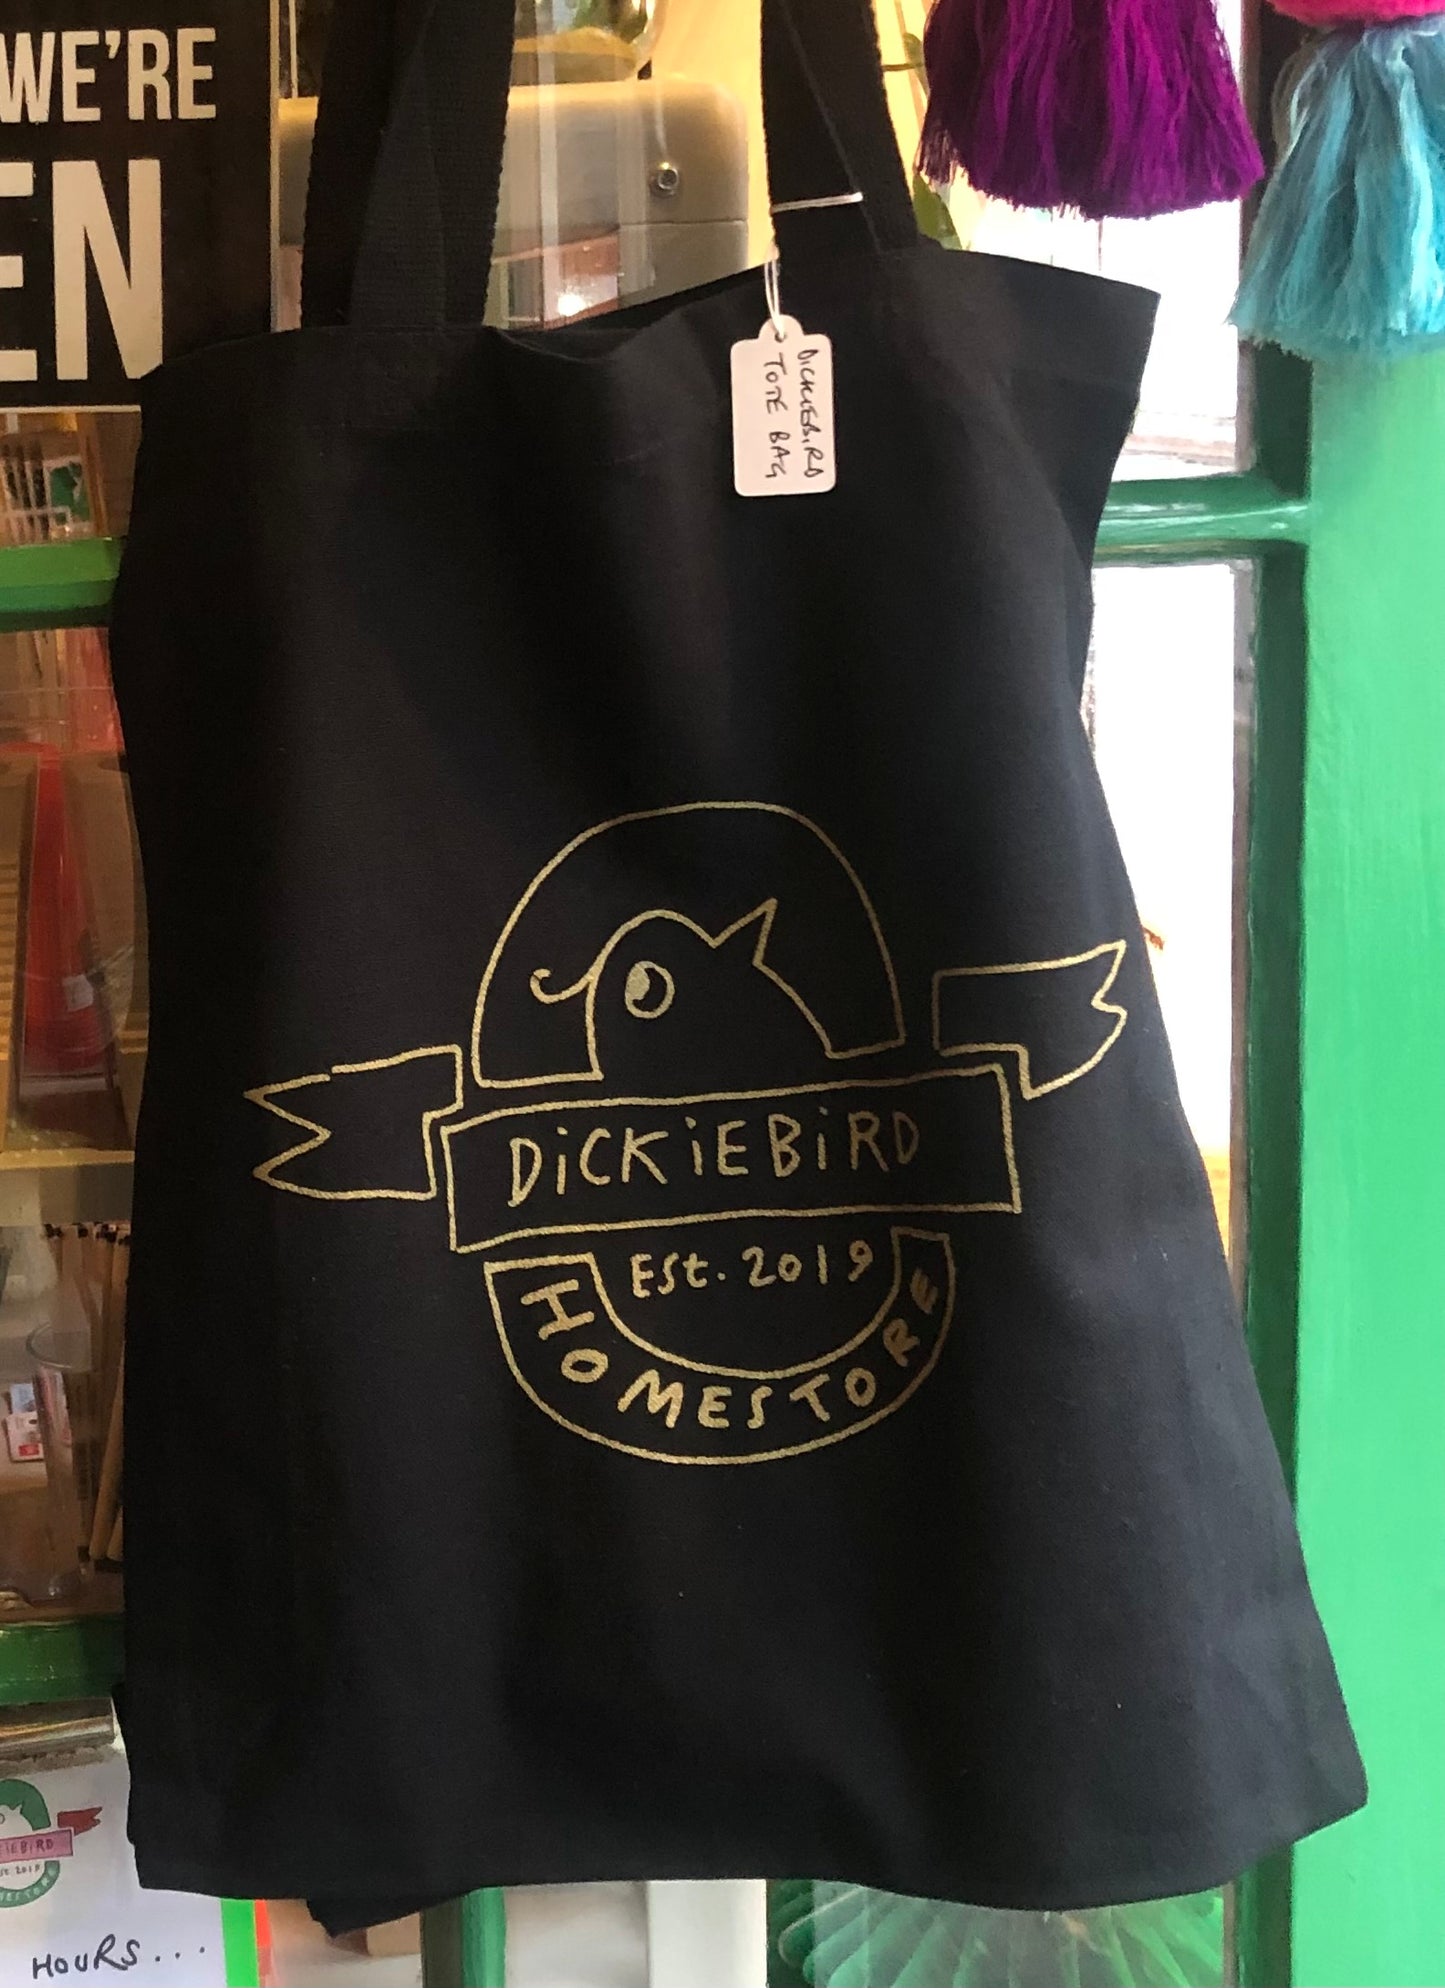 DickieBird tote bag